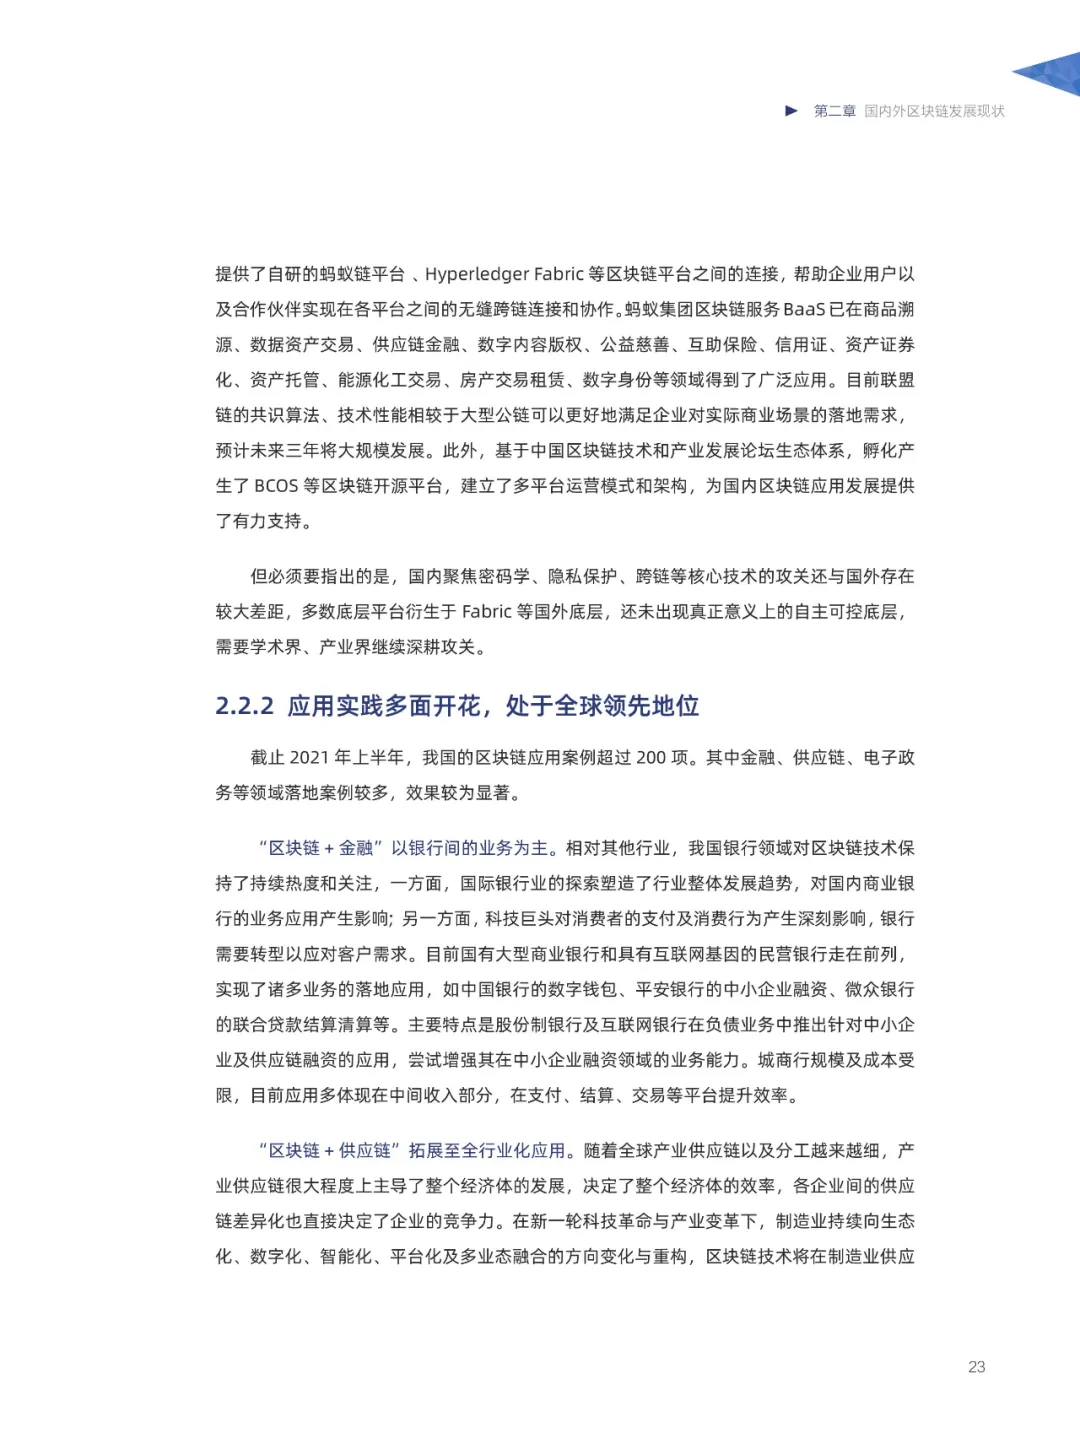 信任经济的崛起——2020中国区块链发展报告_加密算法_25